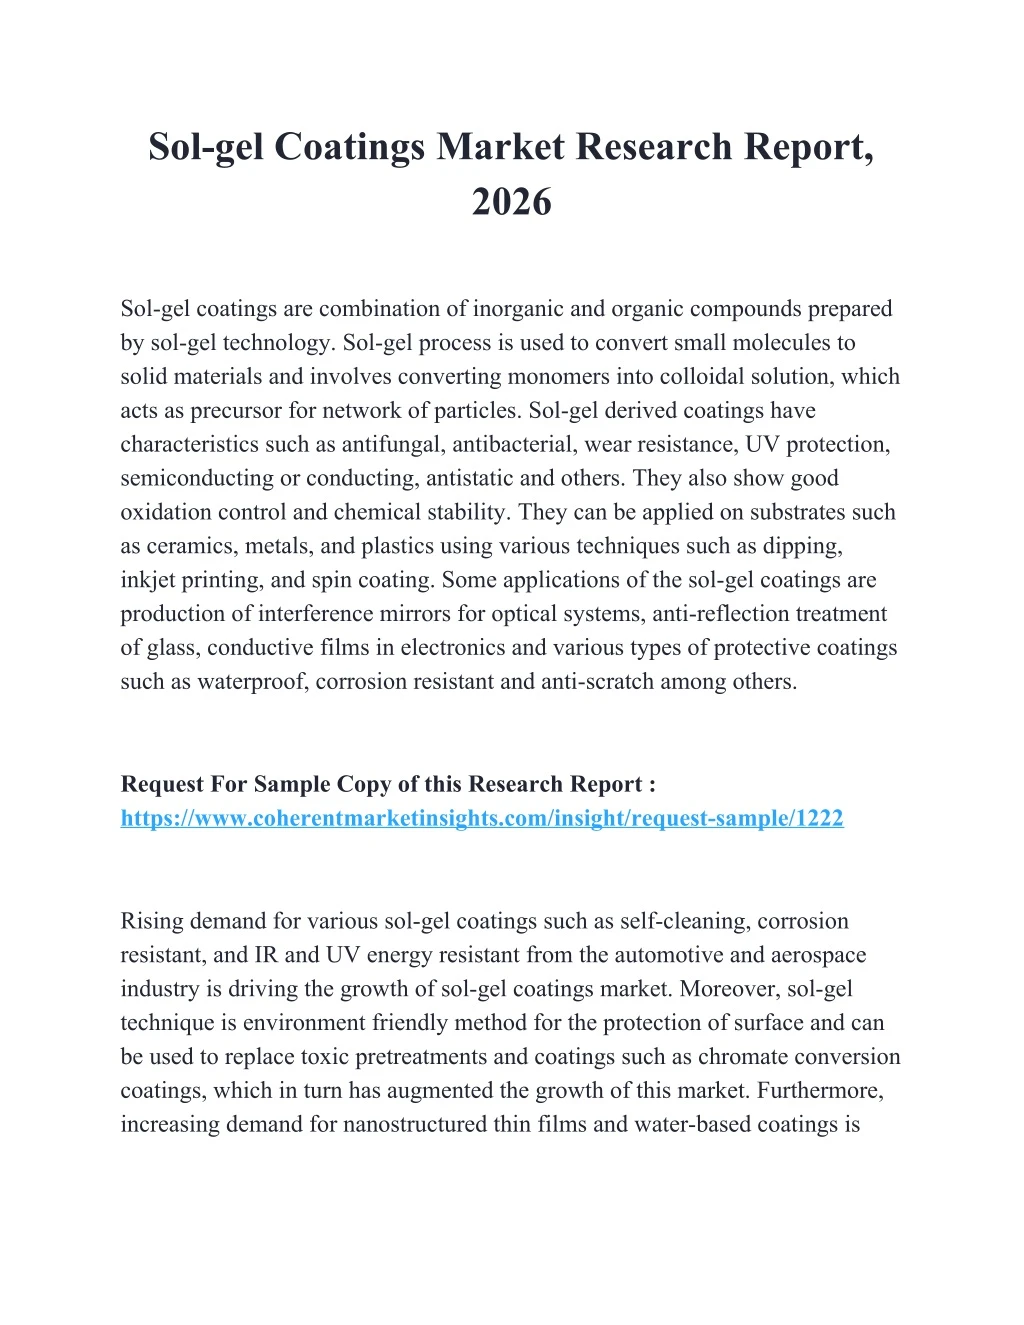 sol gel coatings market research report 2026